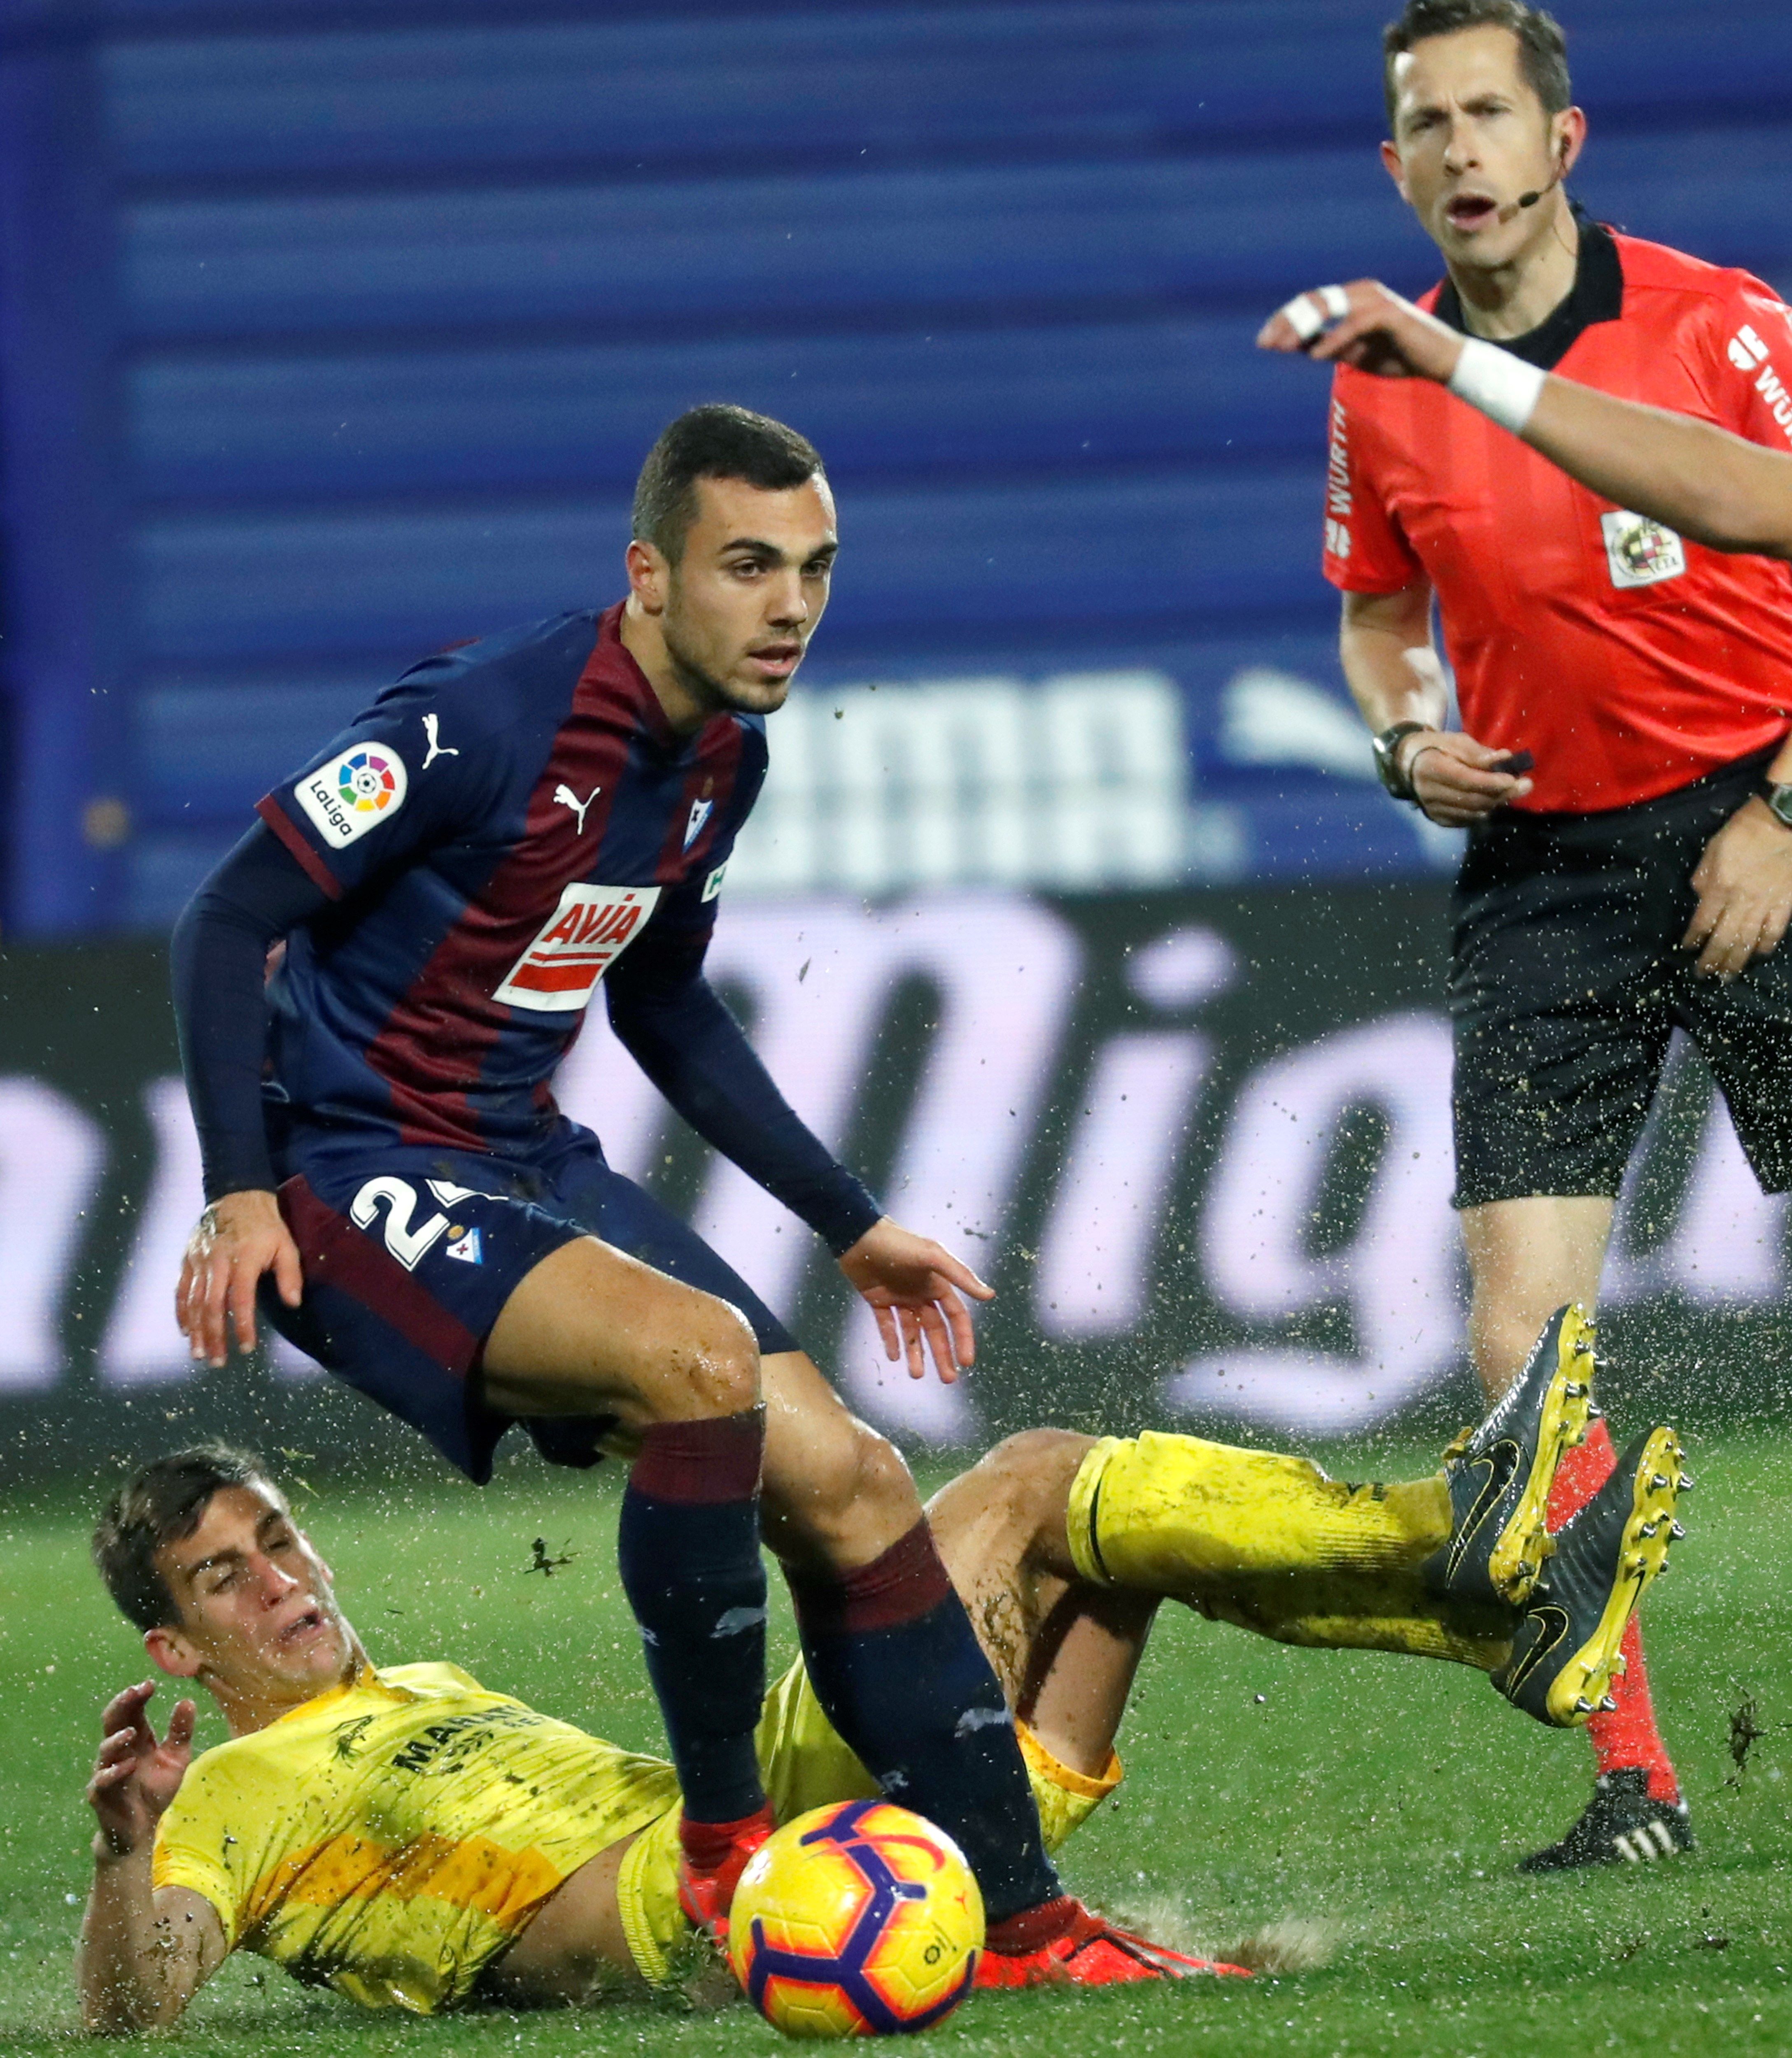 Jordán, formado en el plantel del Espanyol, se marchará del Eibar por una millonada